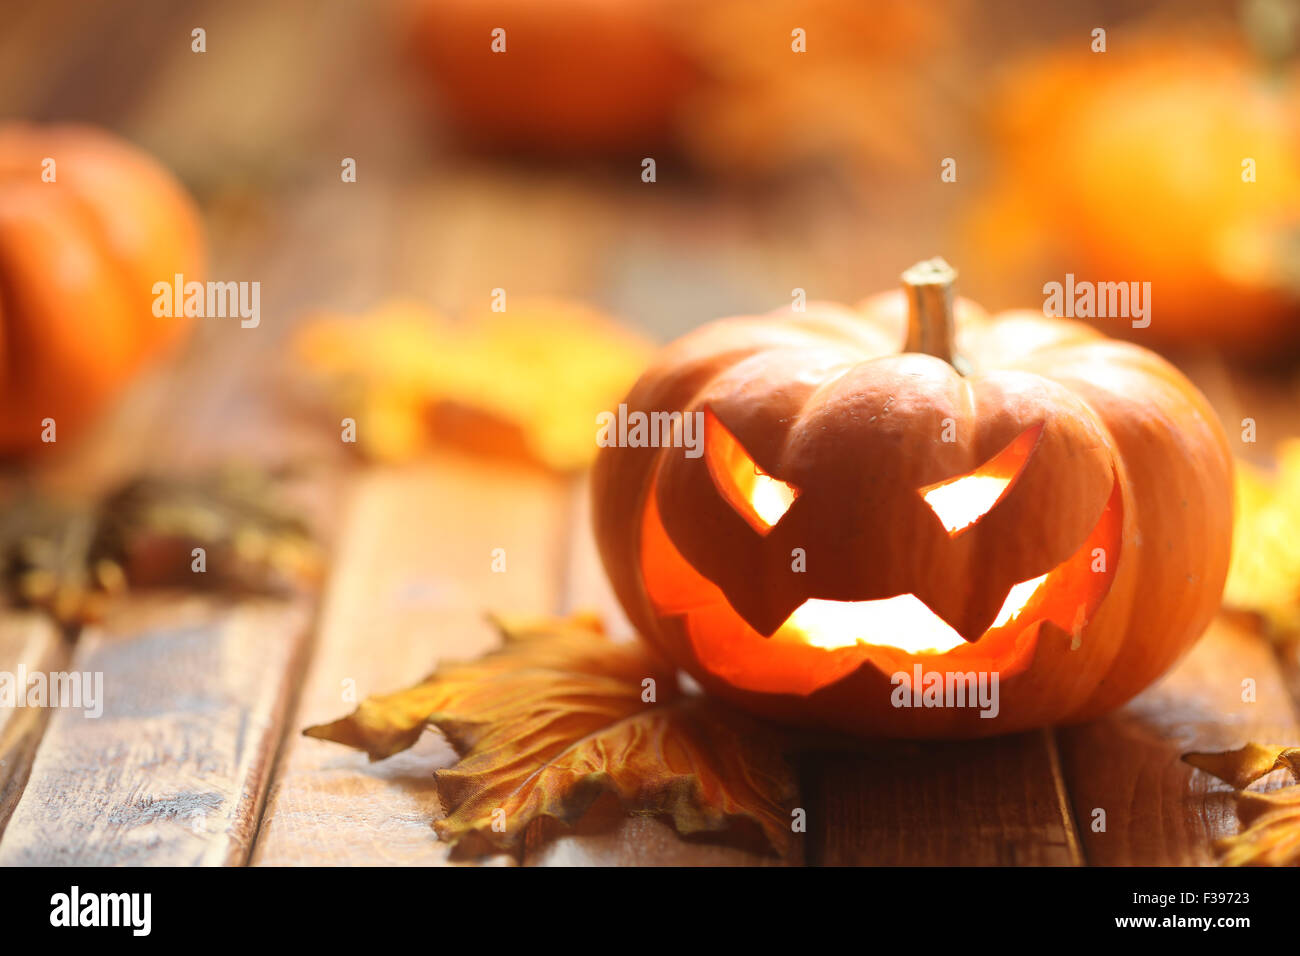 Halloween Jack O' Lantern background Banque D'Images